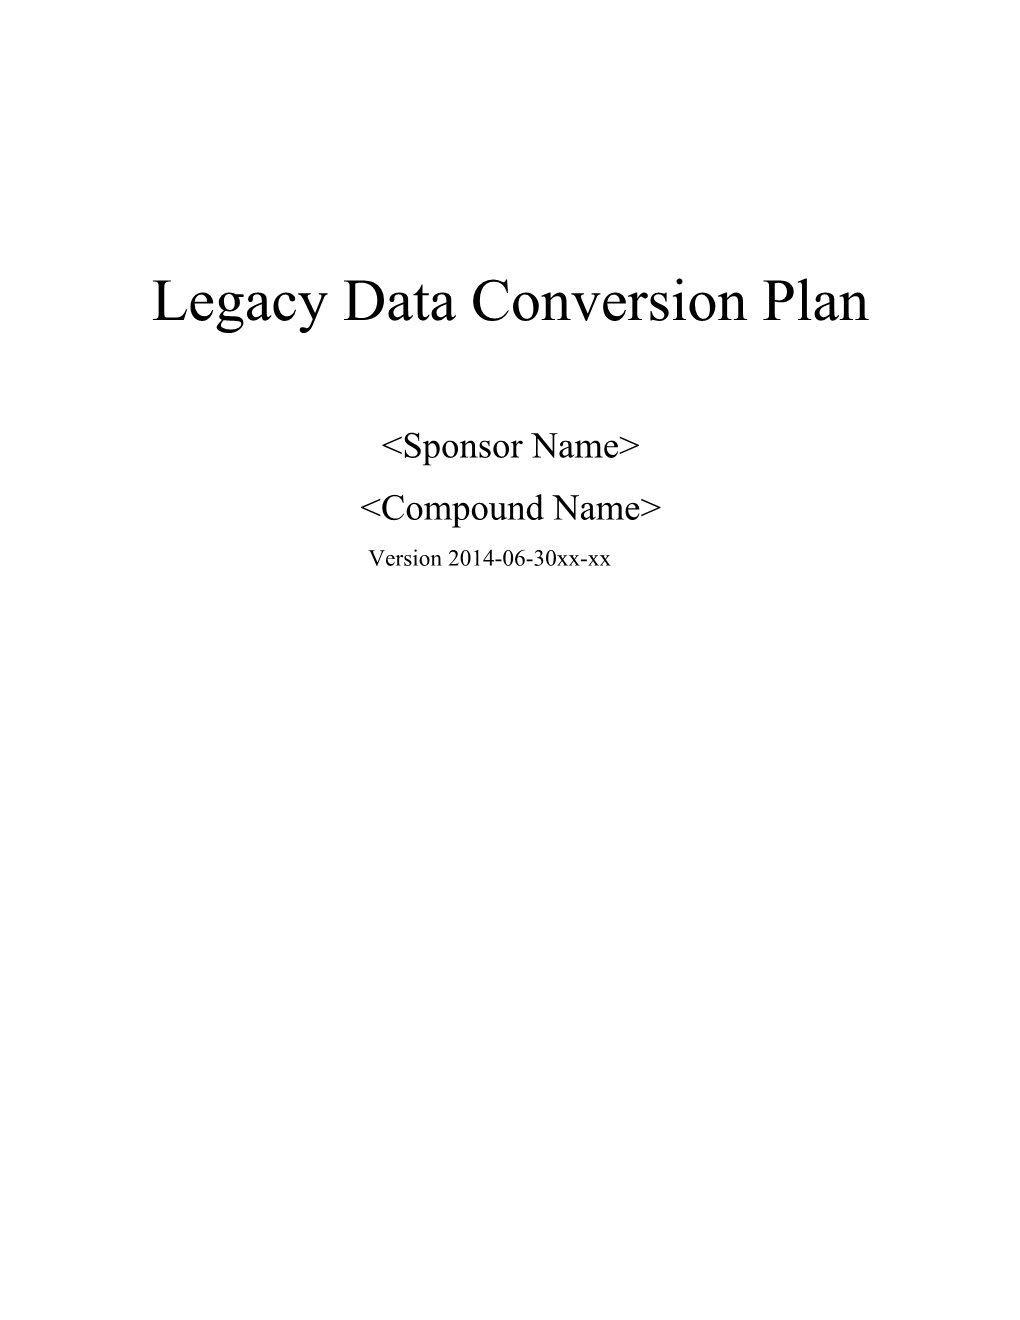 <Compound Name>Legacy Data Conversion Plan